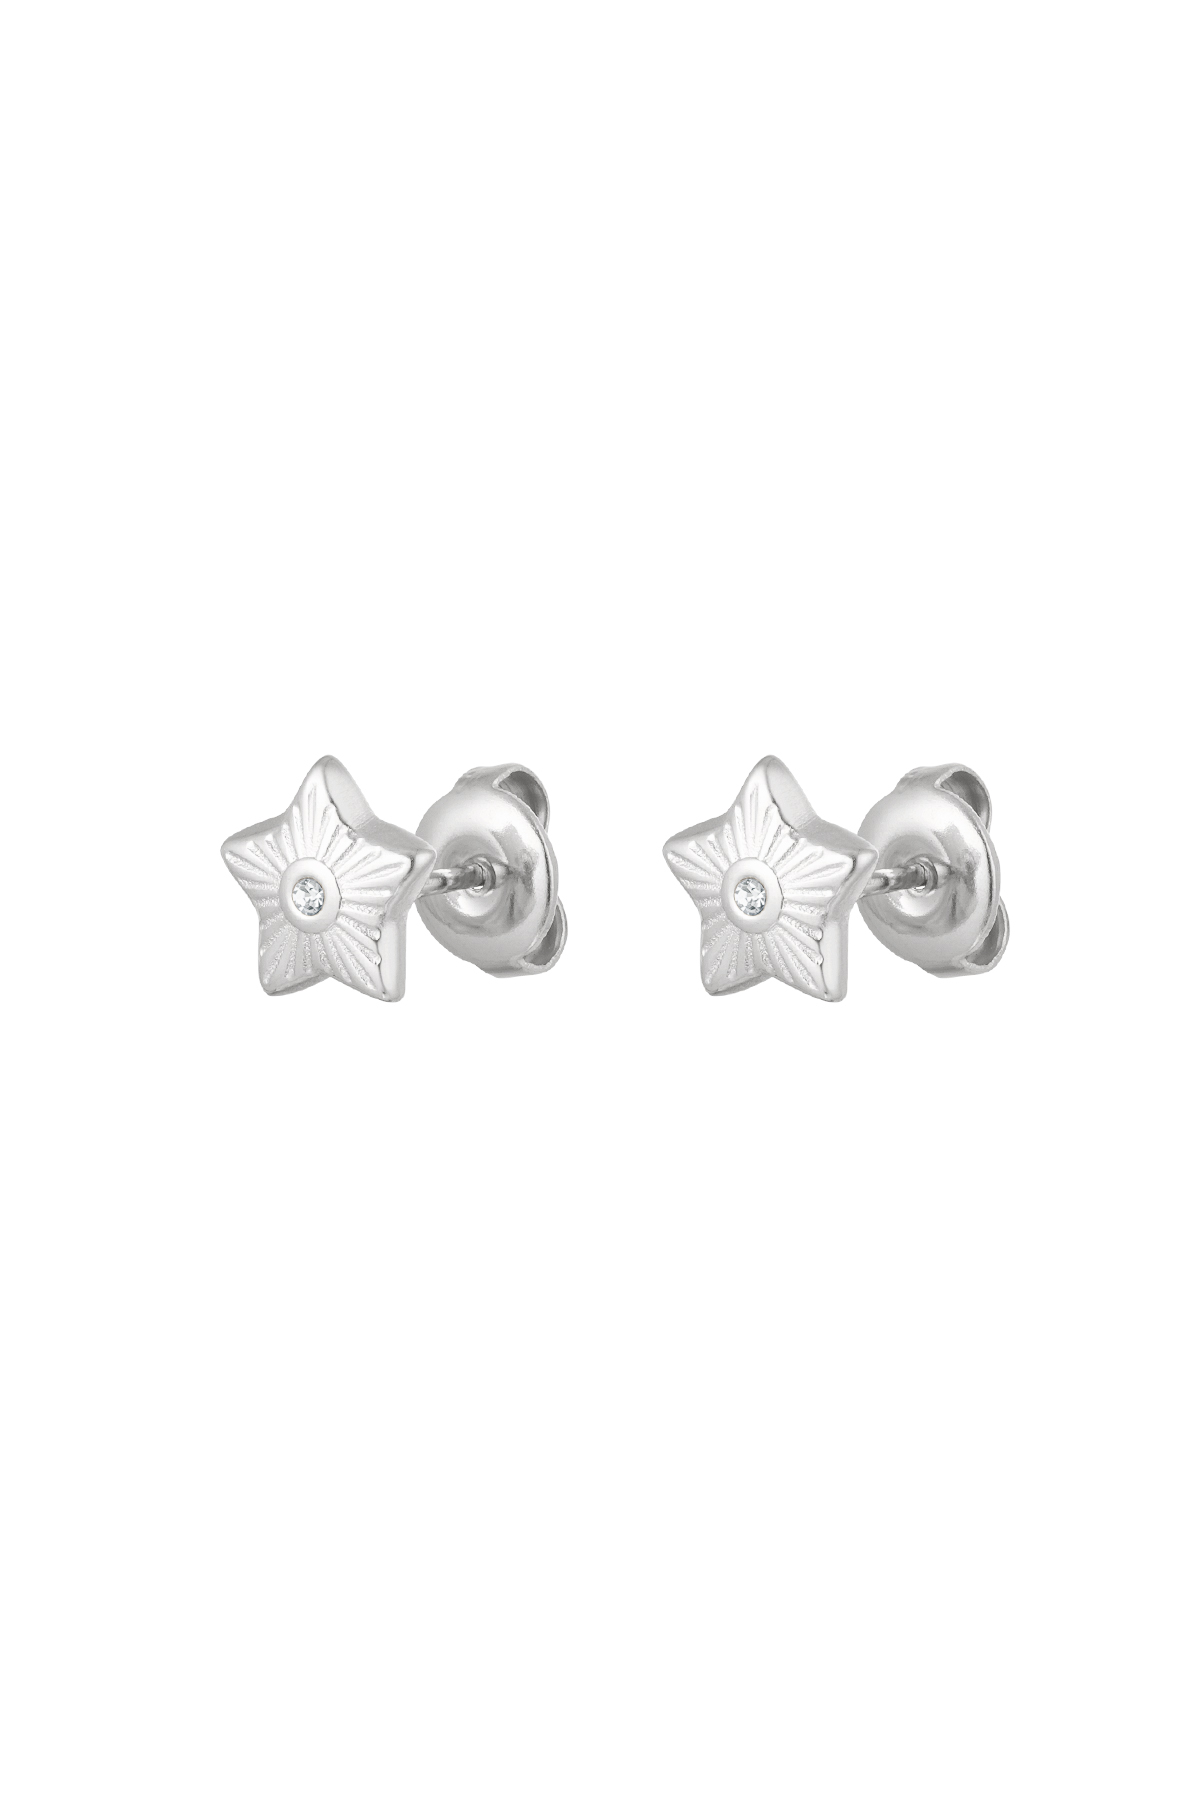 Ear studs star - silver h5 